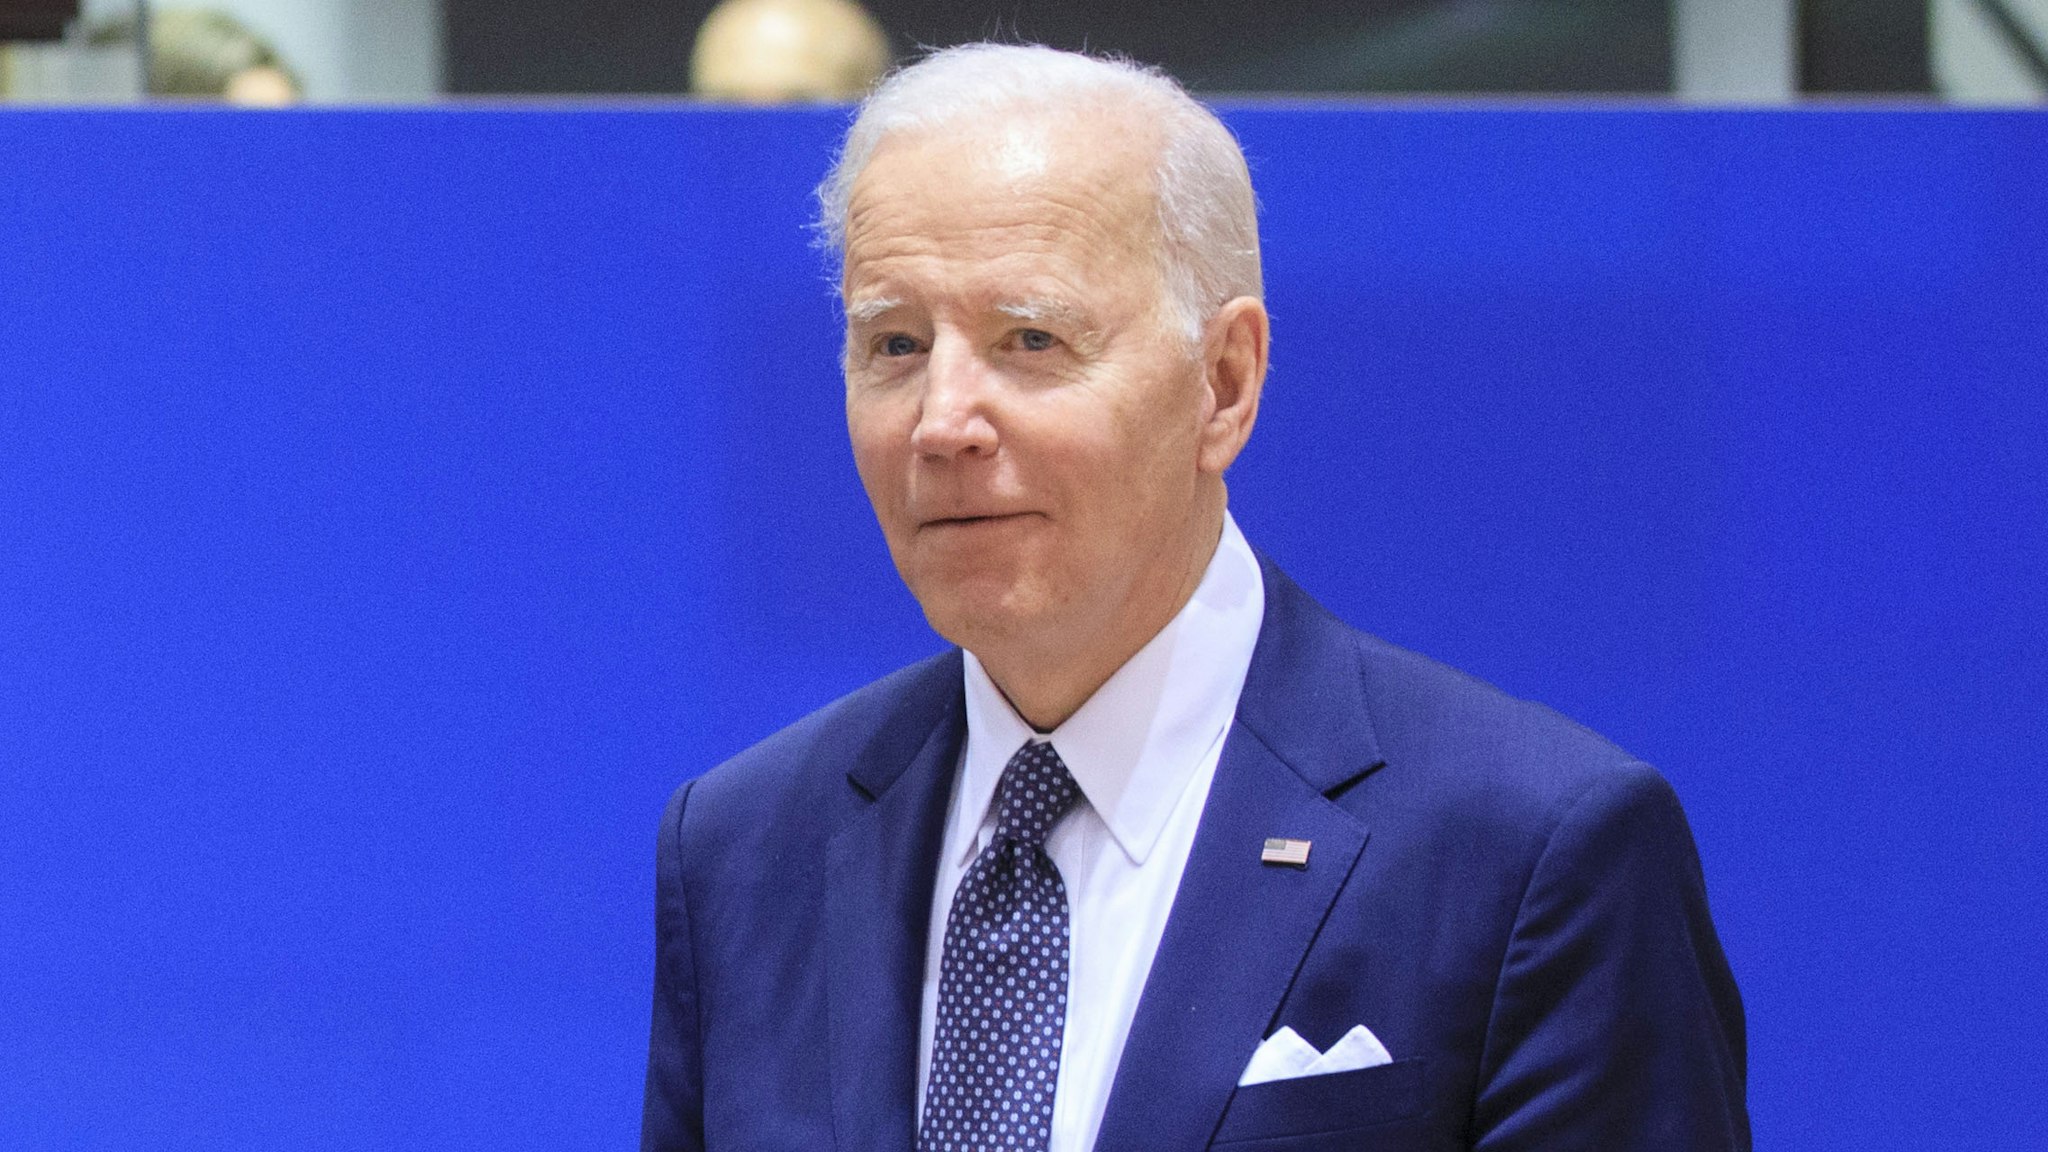 BRUSSELS, BELGIUM - MARCH 24: US President Joe Biden (R) attends an EU USA Summit on the Ukrainian crisis on March 24, 2022 in Brussels, Belgium.